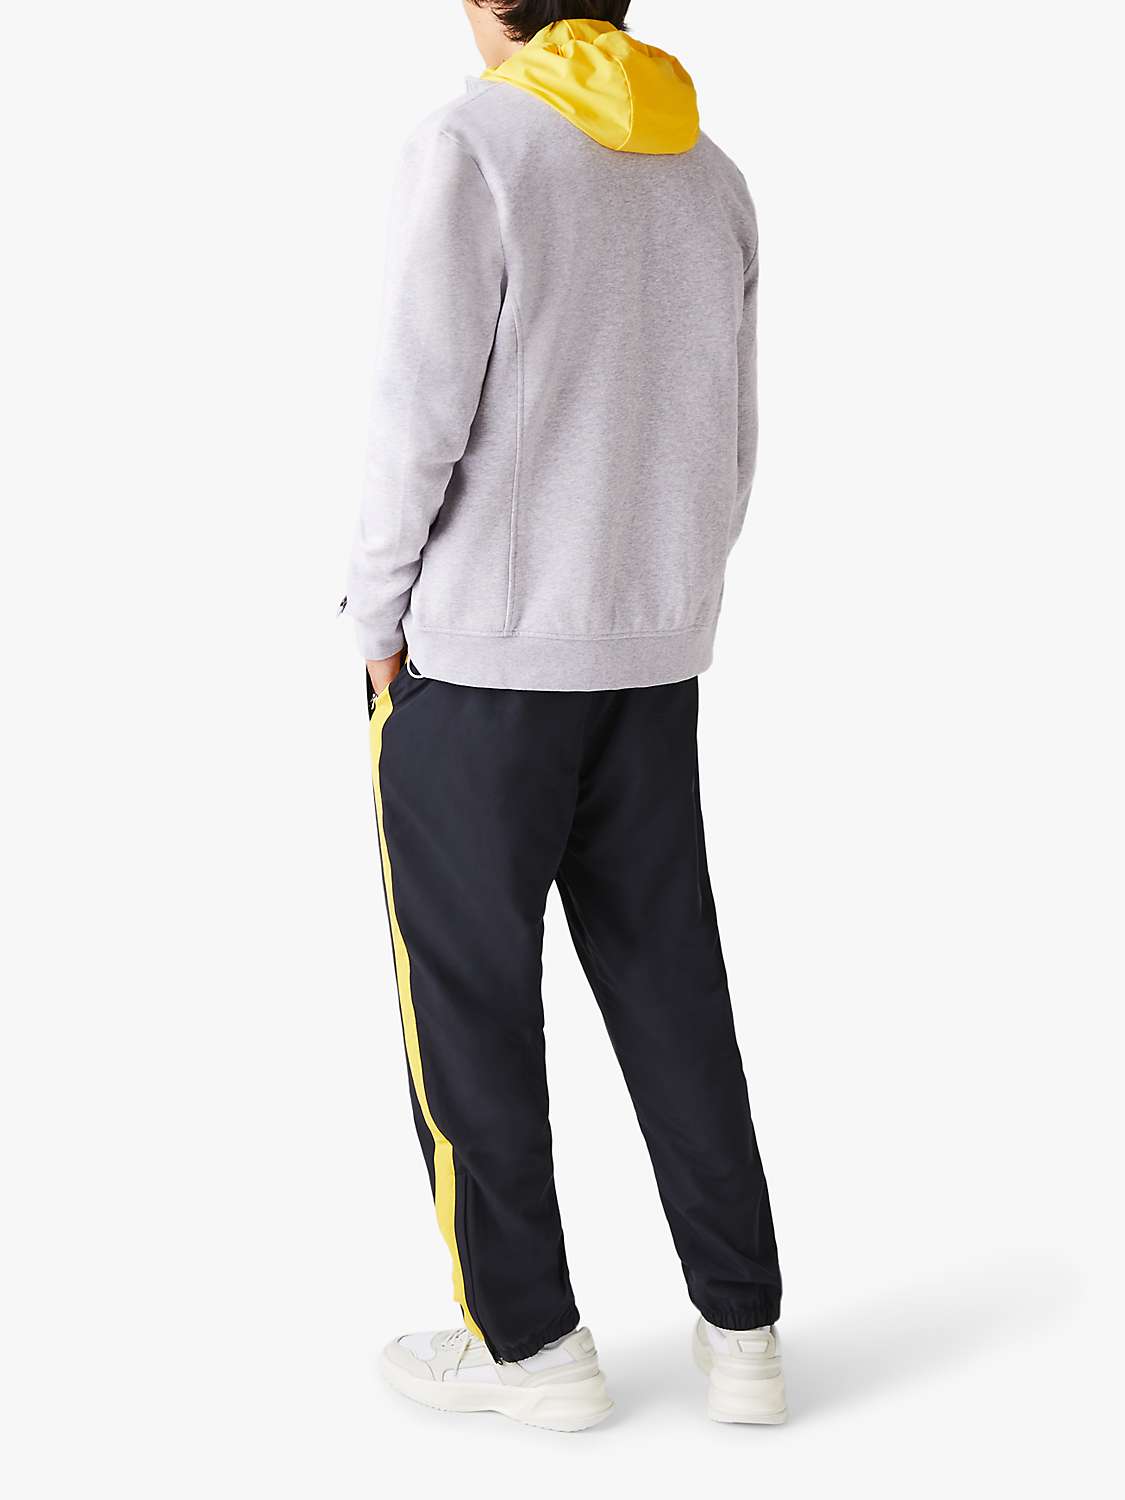 Buy Lacoste Cotton Blend Zip Funnel Neck Sweatshirt, Grey Online at johnlewis.com